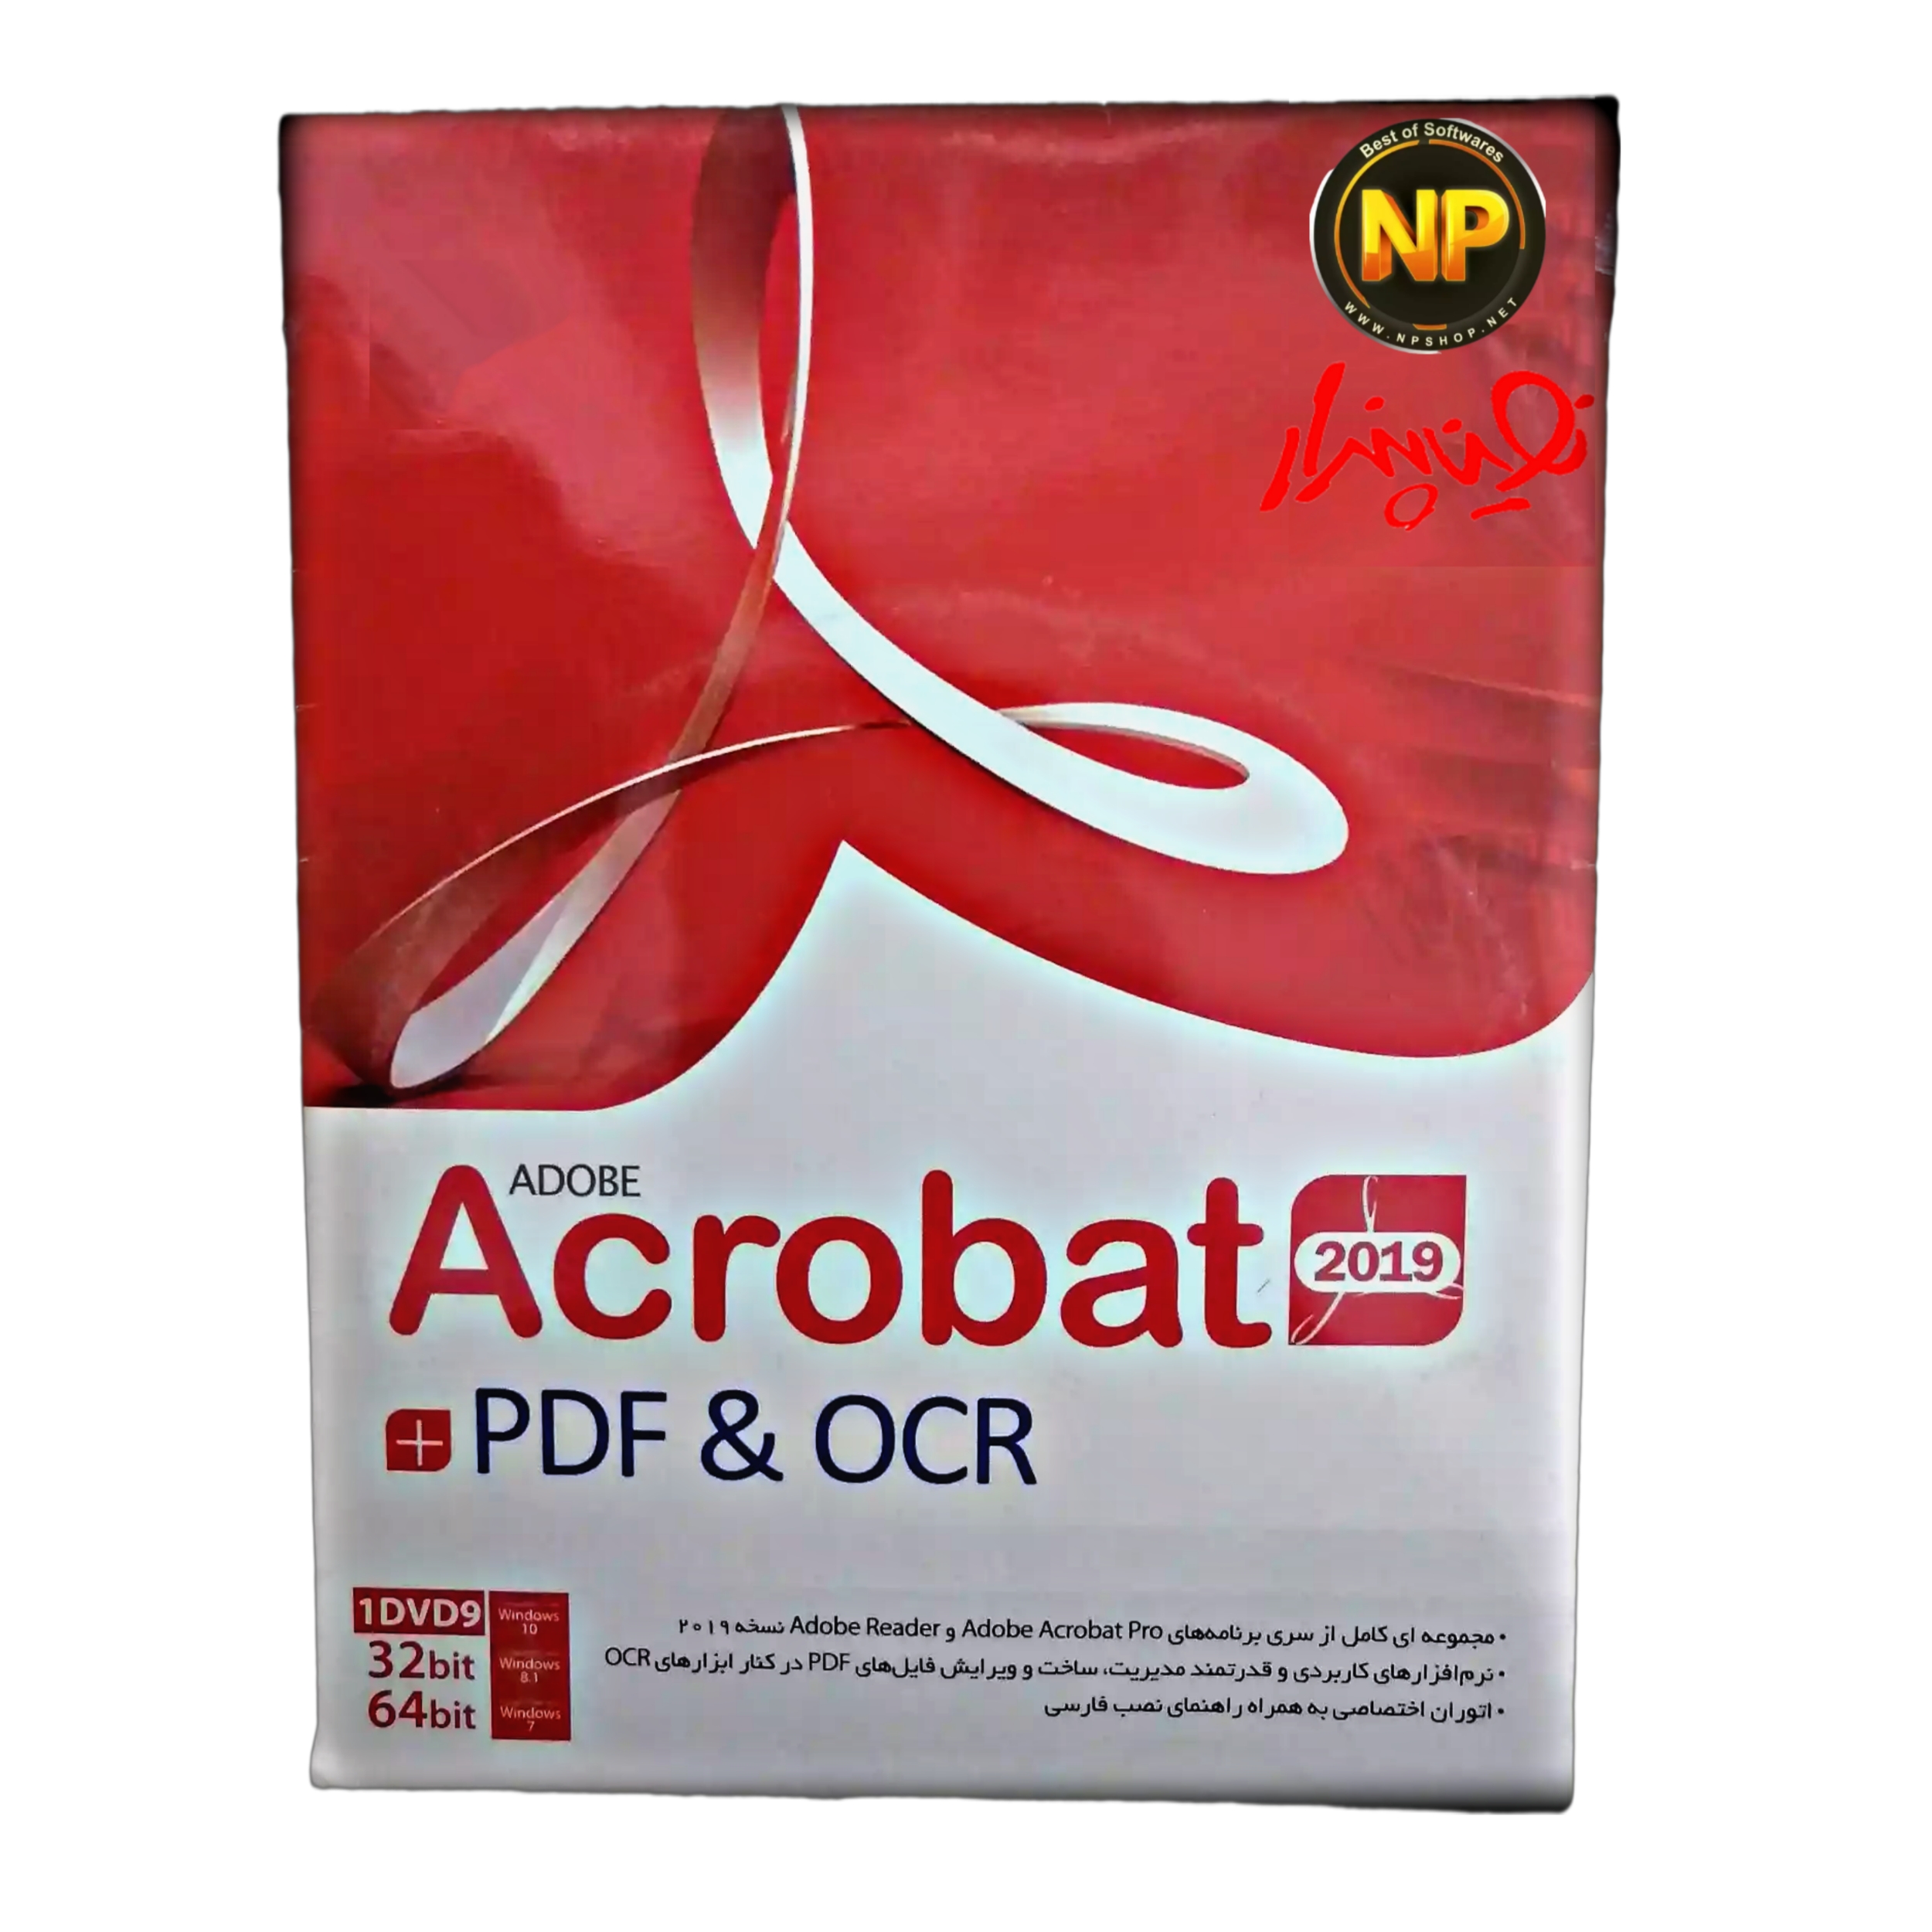 مجموعه نرم افزار Adobe Acrobat plus PDF AND OCR 2019 نشر نوین پندار